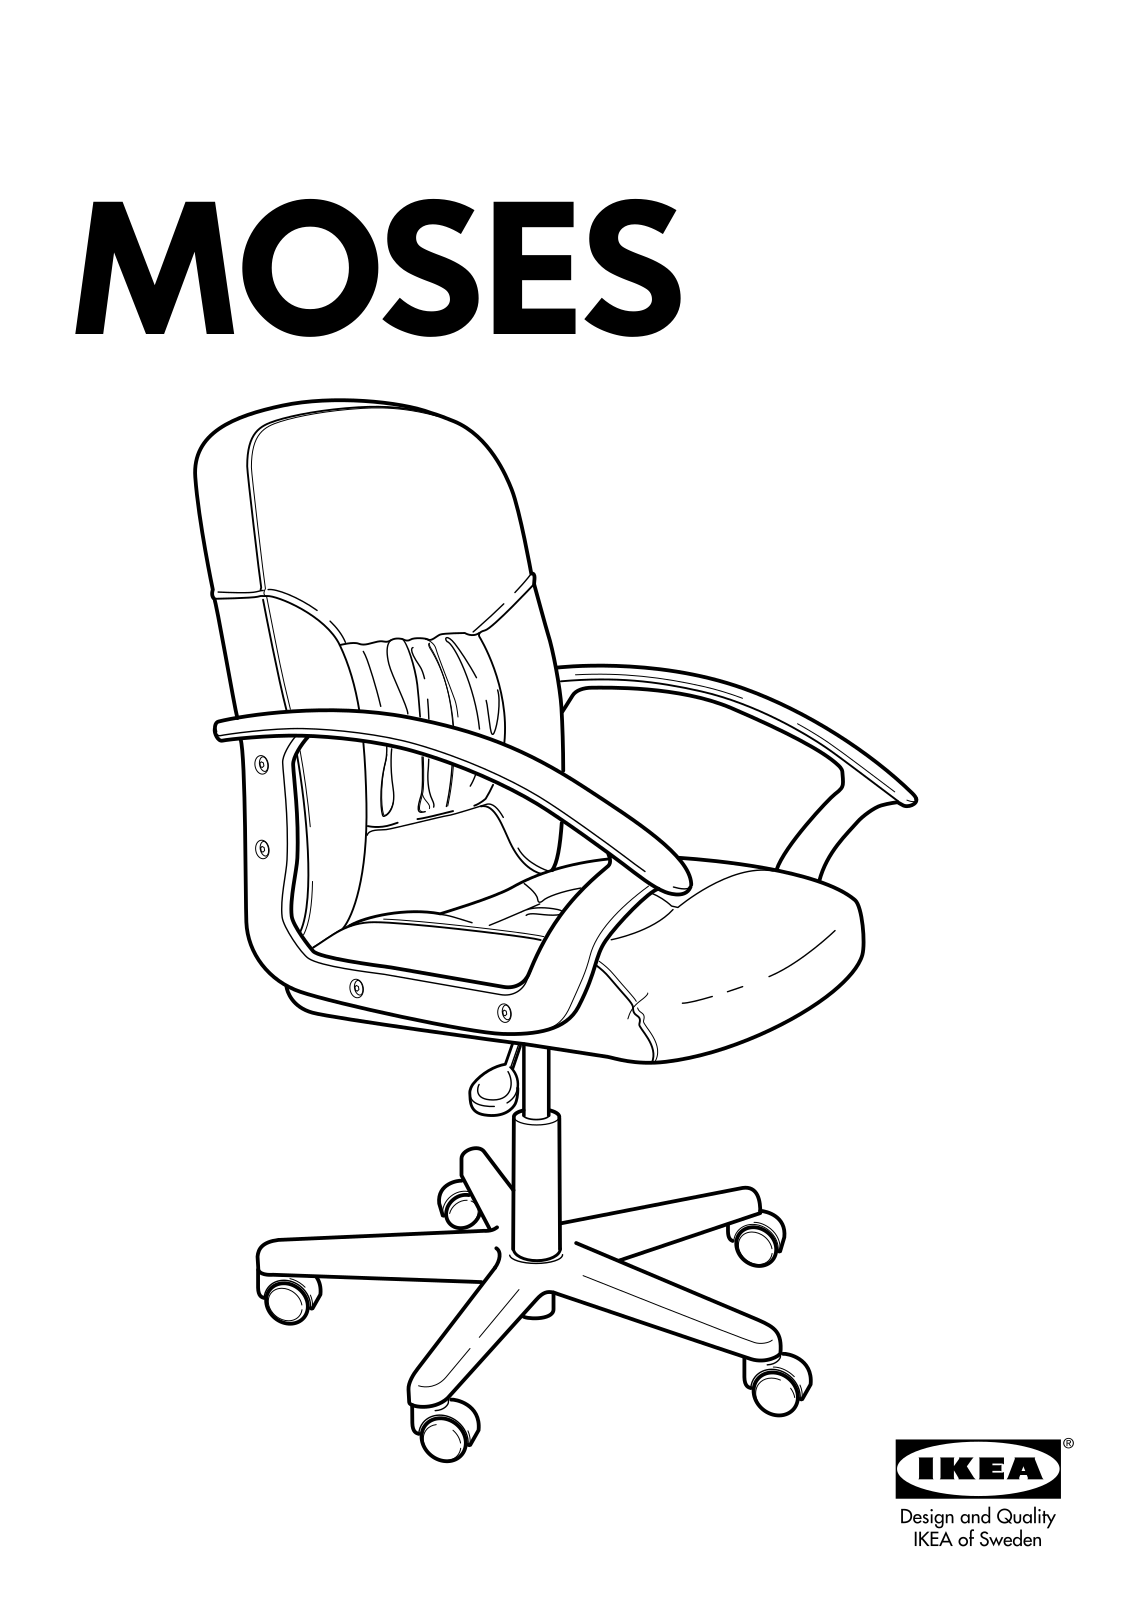 IKEA MOSES User Manual